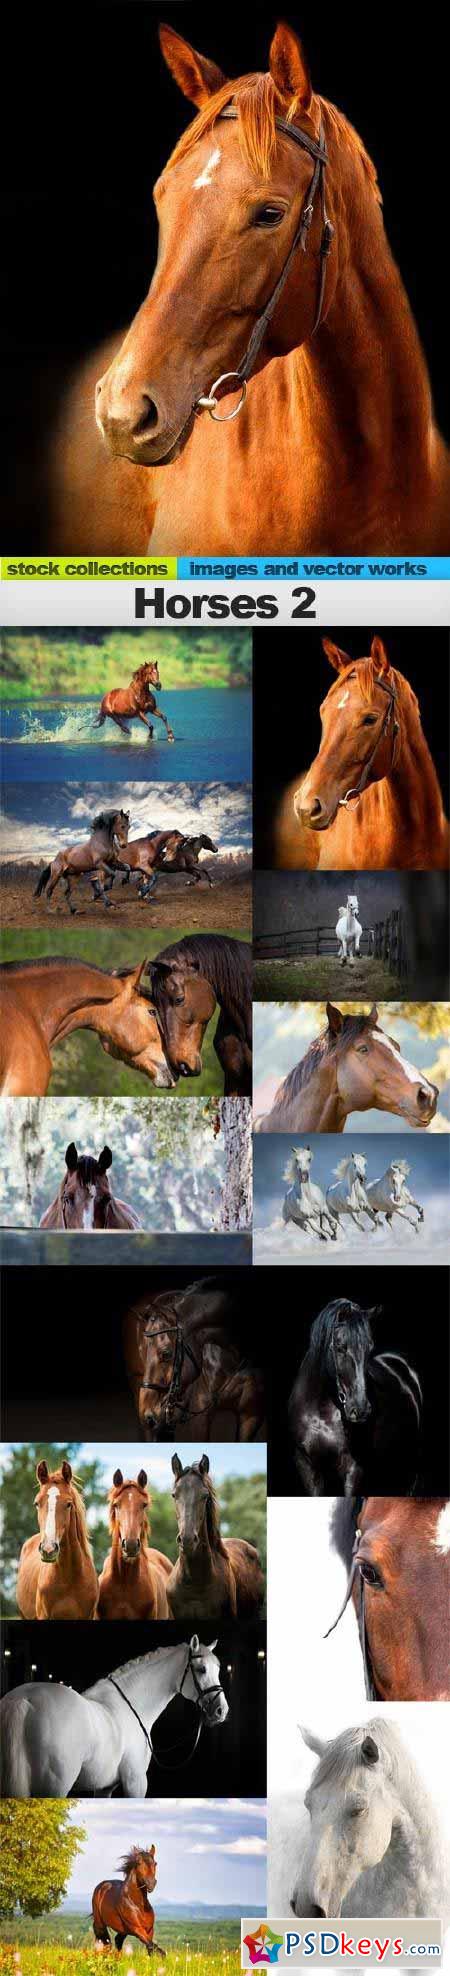 Horses 2, 15 x UHQ JPEG